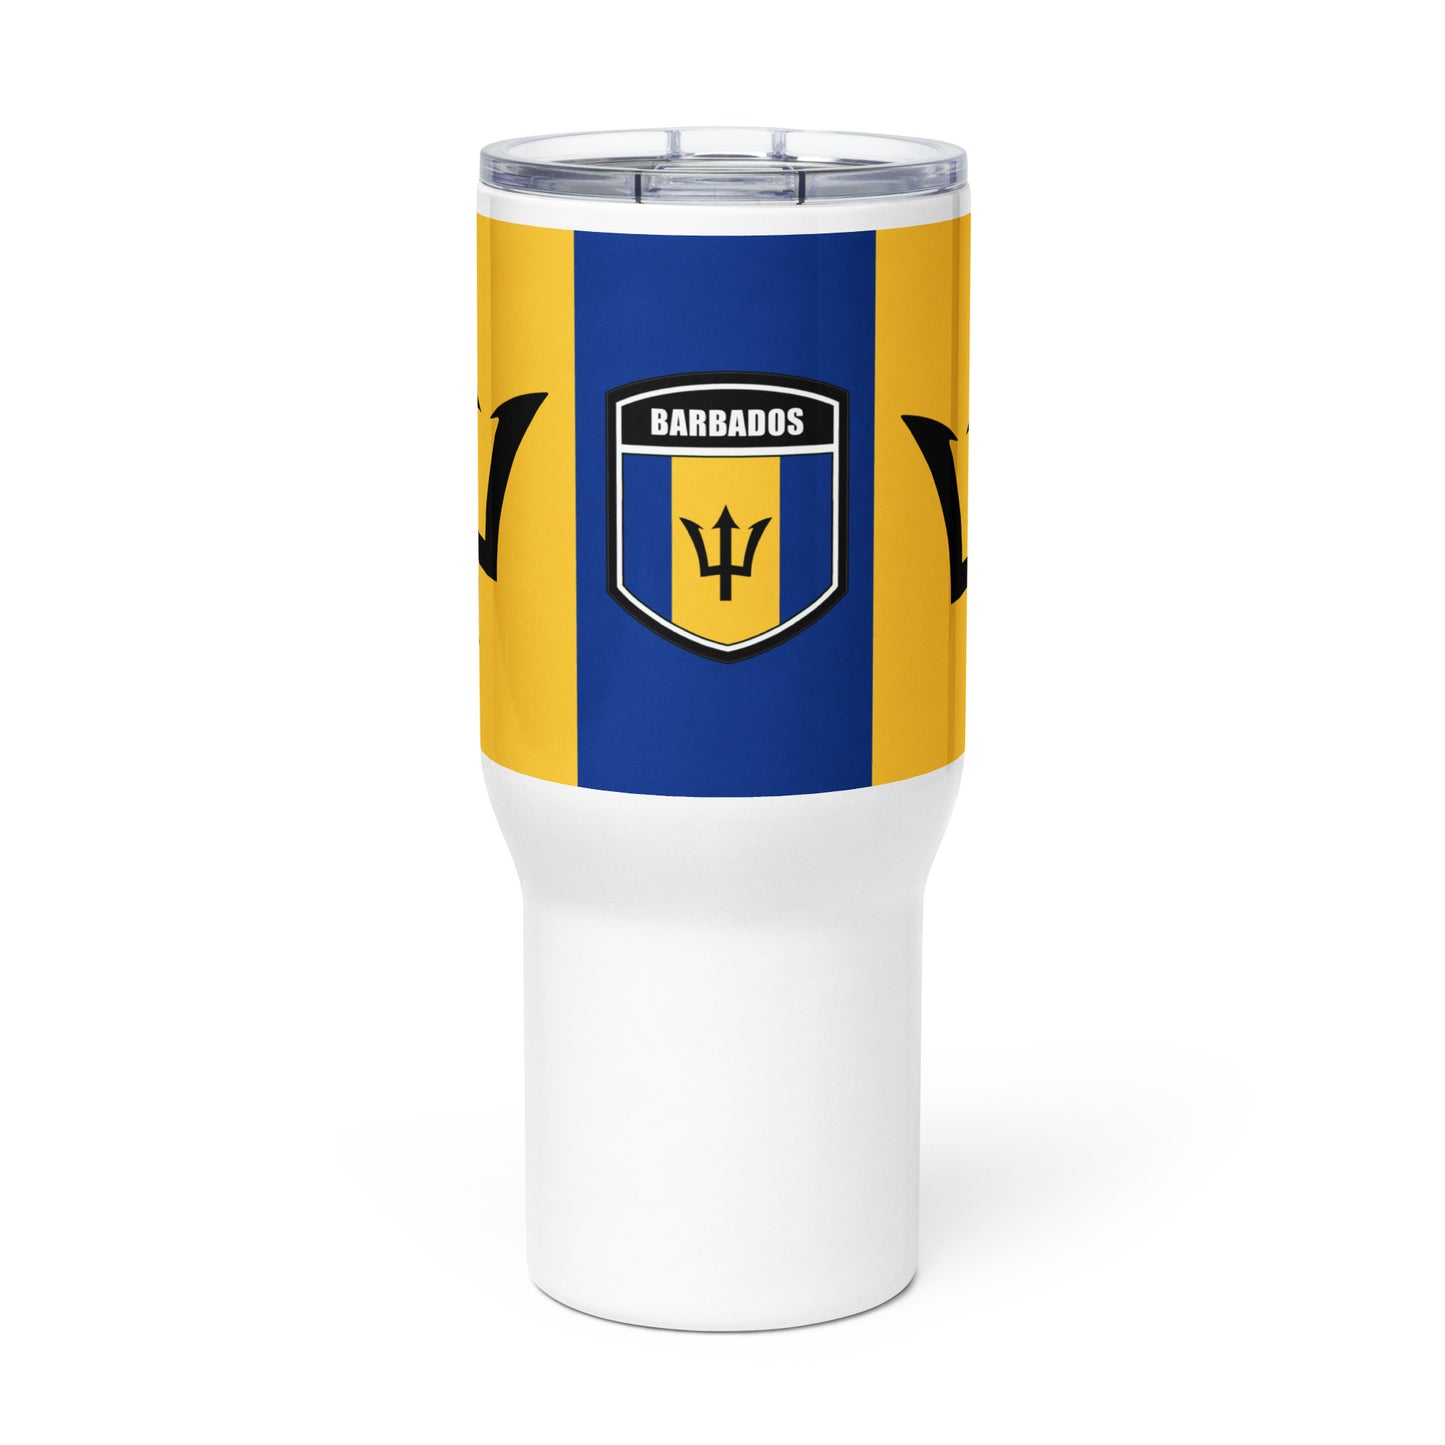 Barbados Travel mug with a handle